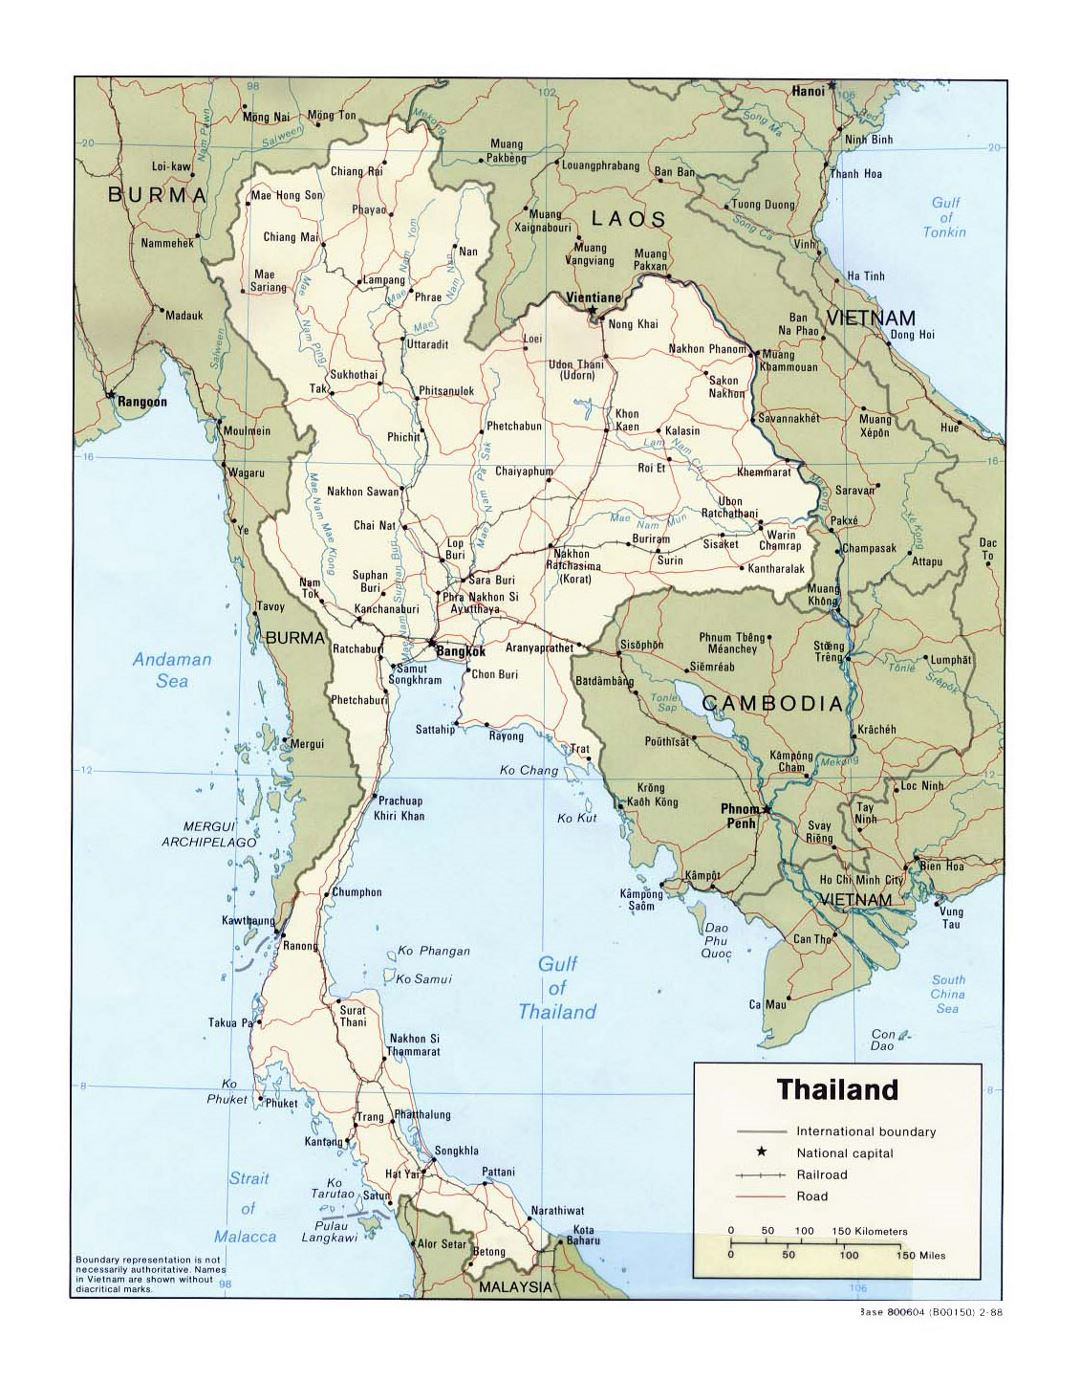 Детальная политическая карта Таиланда с дорогами, железными дорогами и крупными городами - 1988